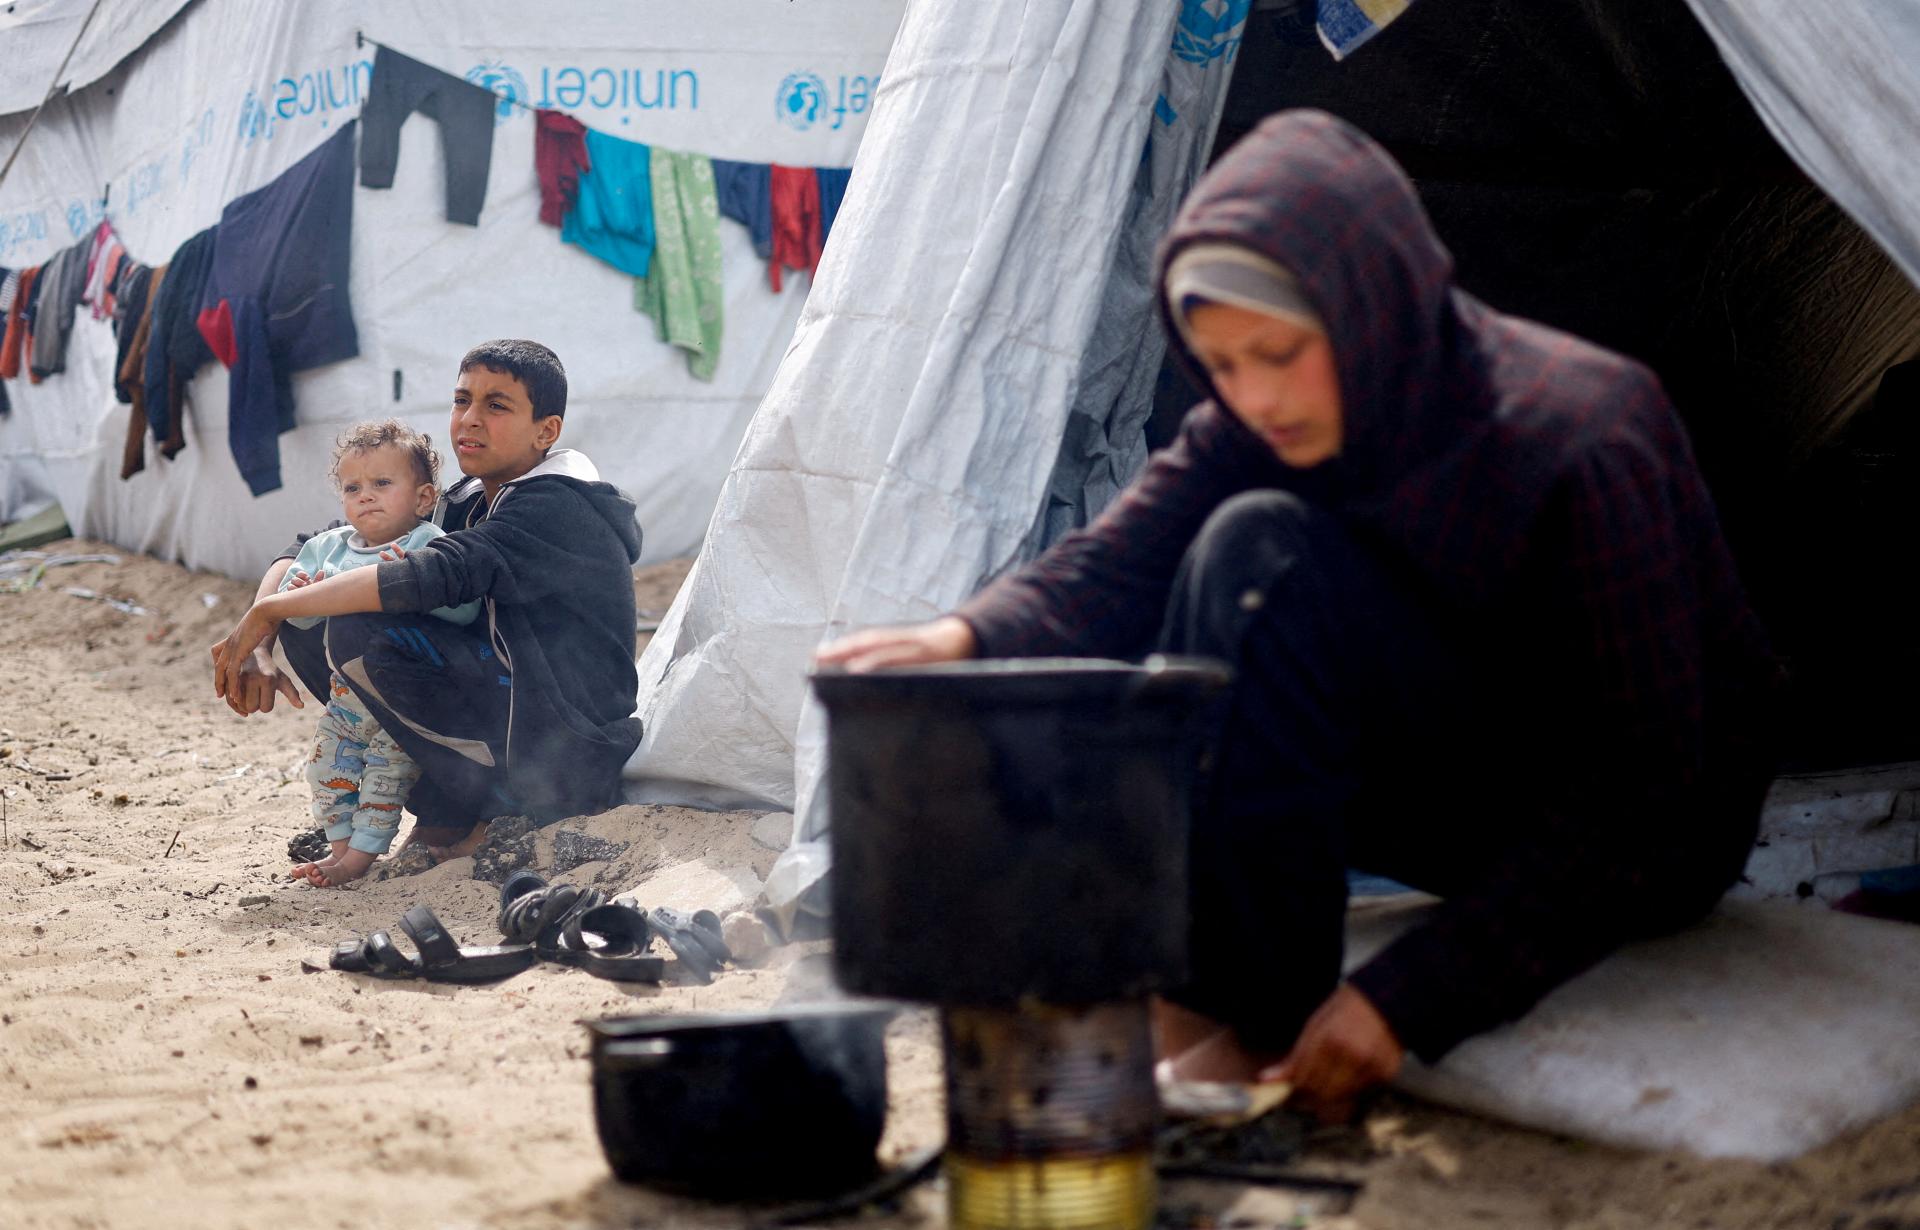 Medzinárodný deň žien v Gaze nie je, hovoria matky hladujúcich detí